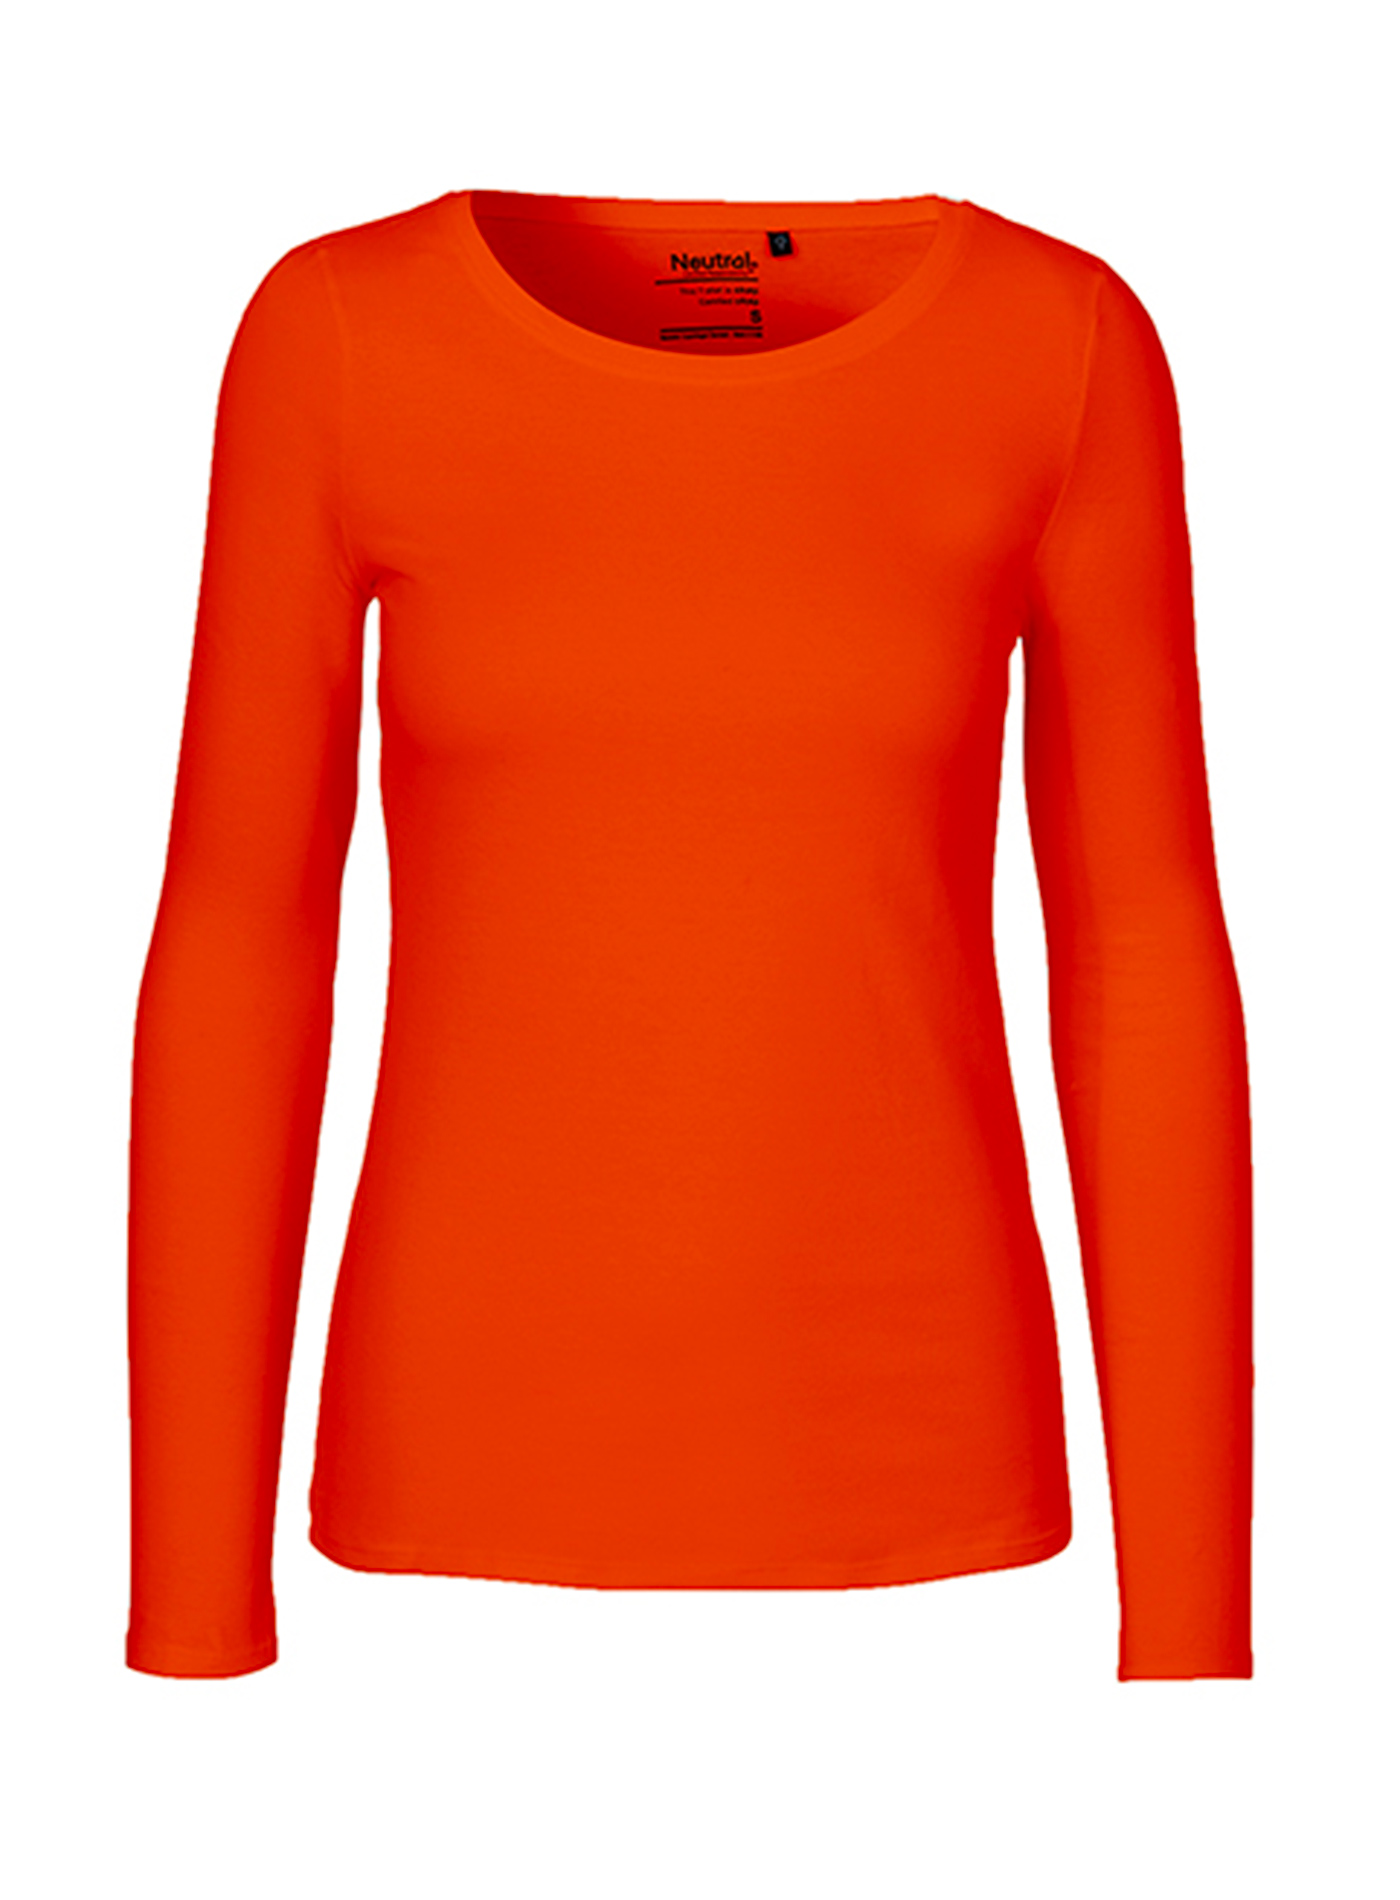 Dámské tričko s dlouhým rukávem Neutral - Oranžová XL